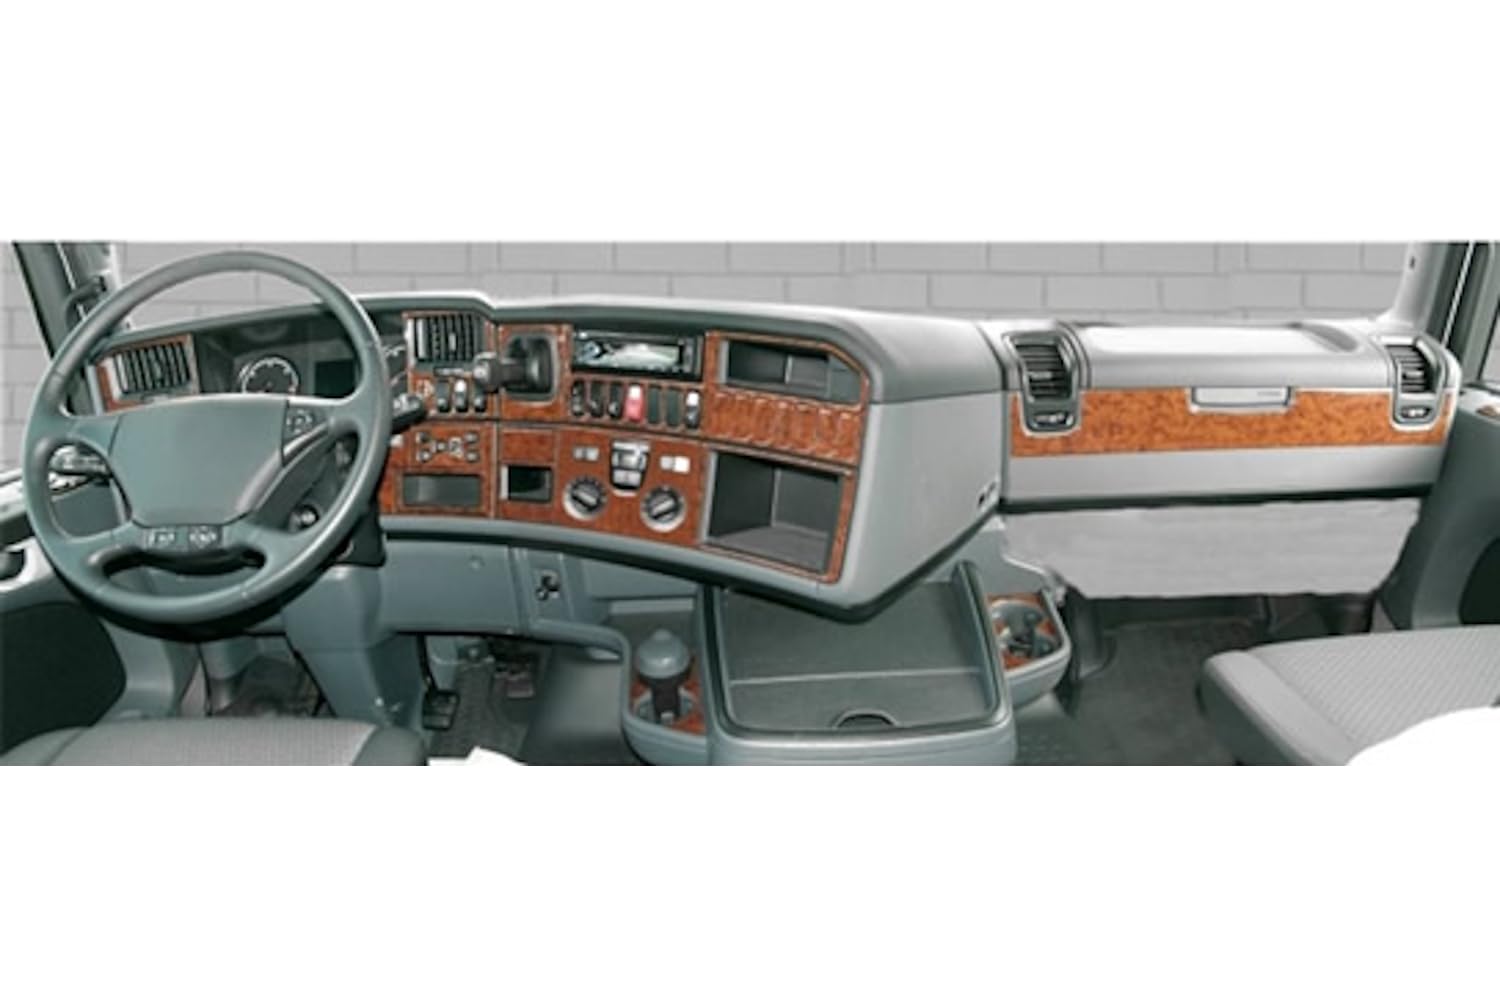 AUTOKLEIDUNG® Cockpit Dekor kompatibel mit Scania R Serie ab Baujahr 10/2009 54 Teile | 3D Titan Optik von Autokleidung